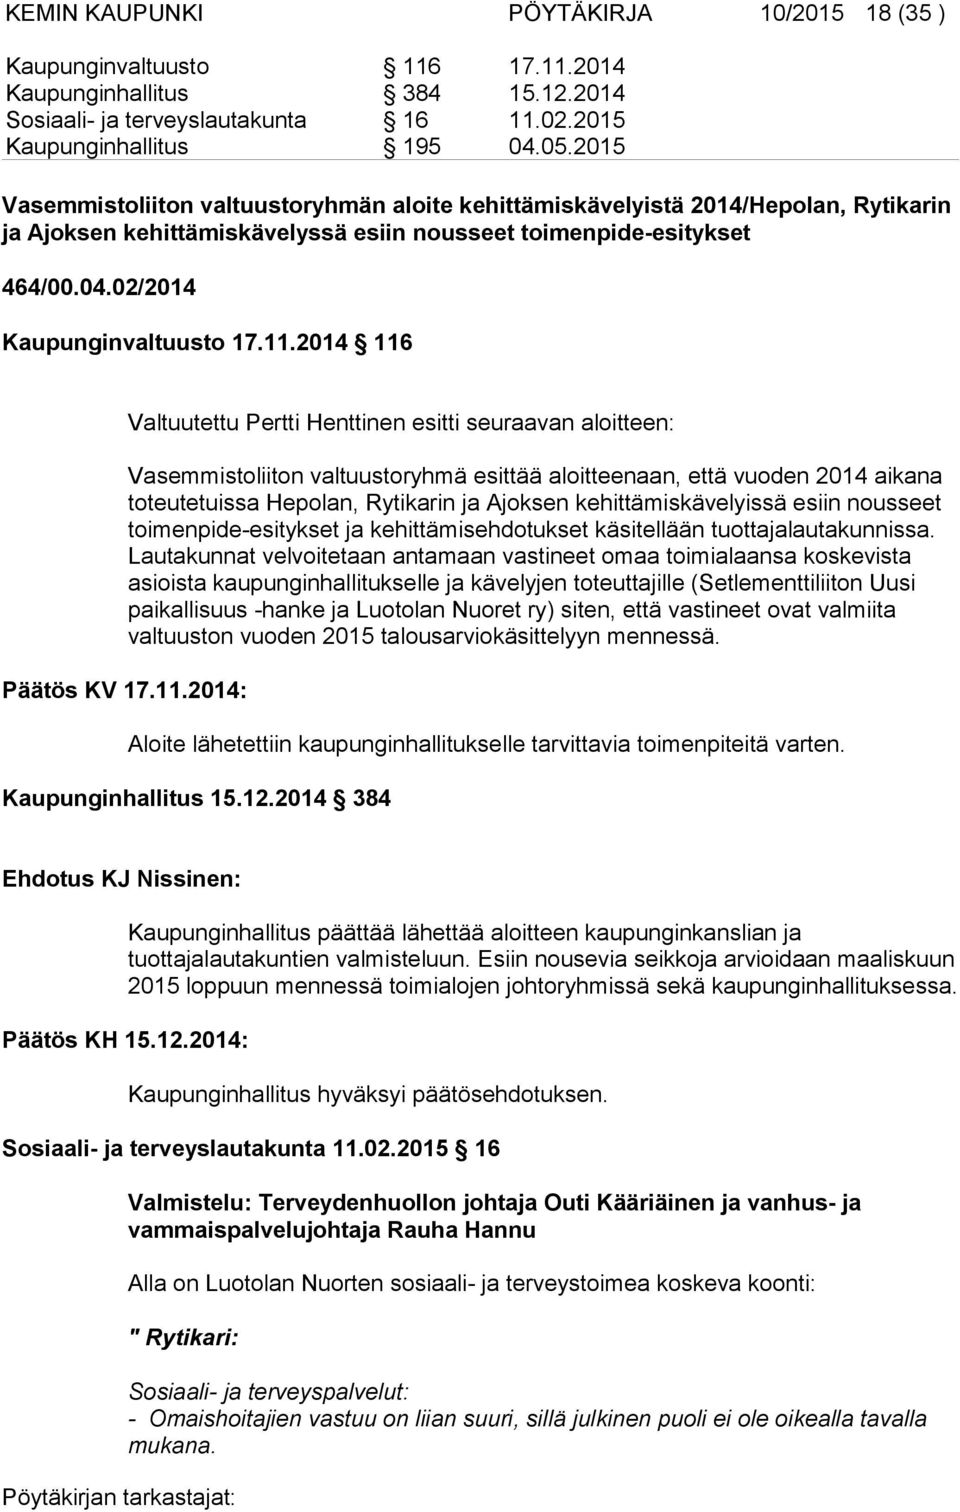 2014 116 Valtuutettu Pertti Henttinen esitti seuraavan aloitteen: Vasemmistoliiton valtuustoryhmä esittää aloitteenaan, että vuoden 2014 aikana toteutetuissa Hepolan, Rytikarin ja Ajoksen